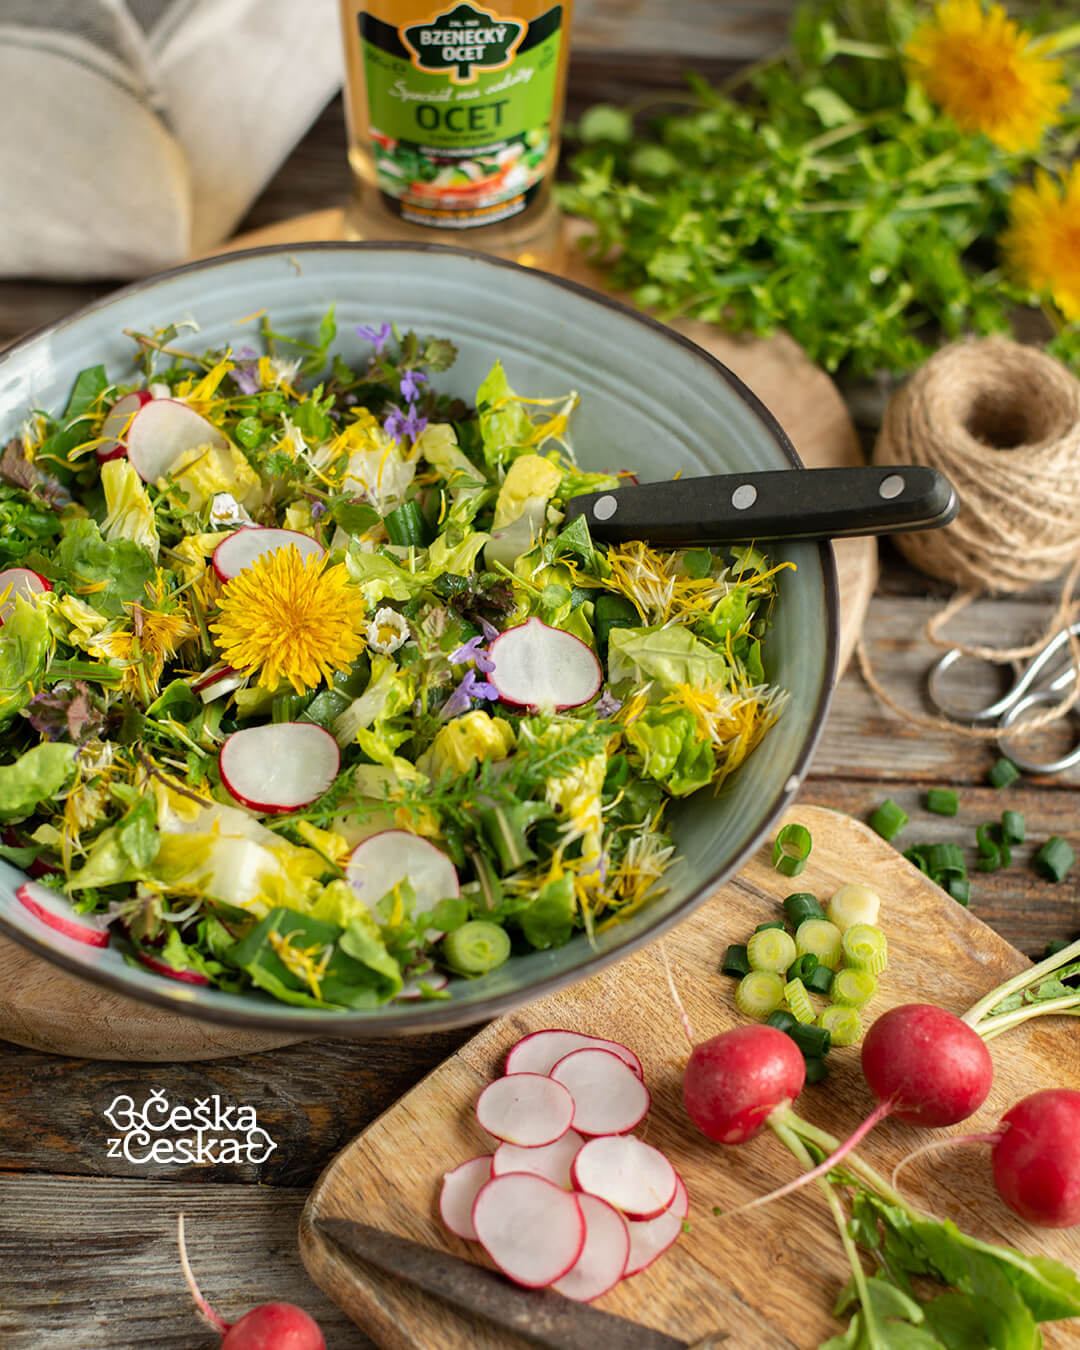 Bramborové smaženky (bramborové placky) na talíři, vedle mísa se salátem s bylinek a kolem poházené bylinky a ředkvičky.